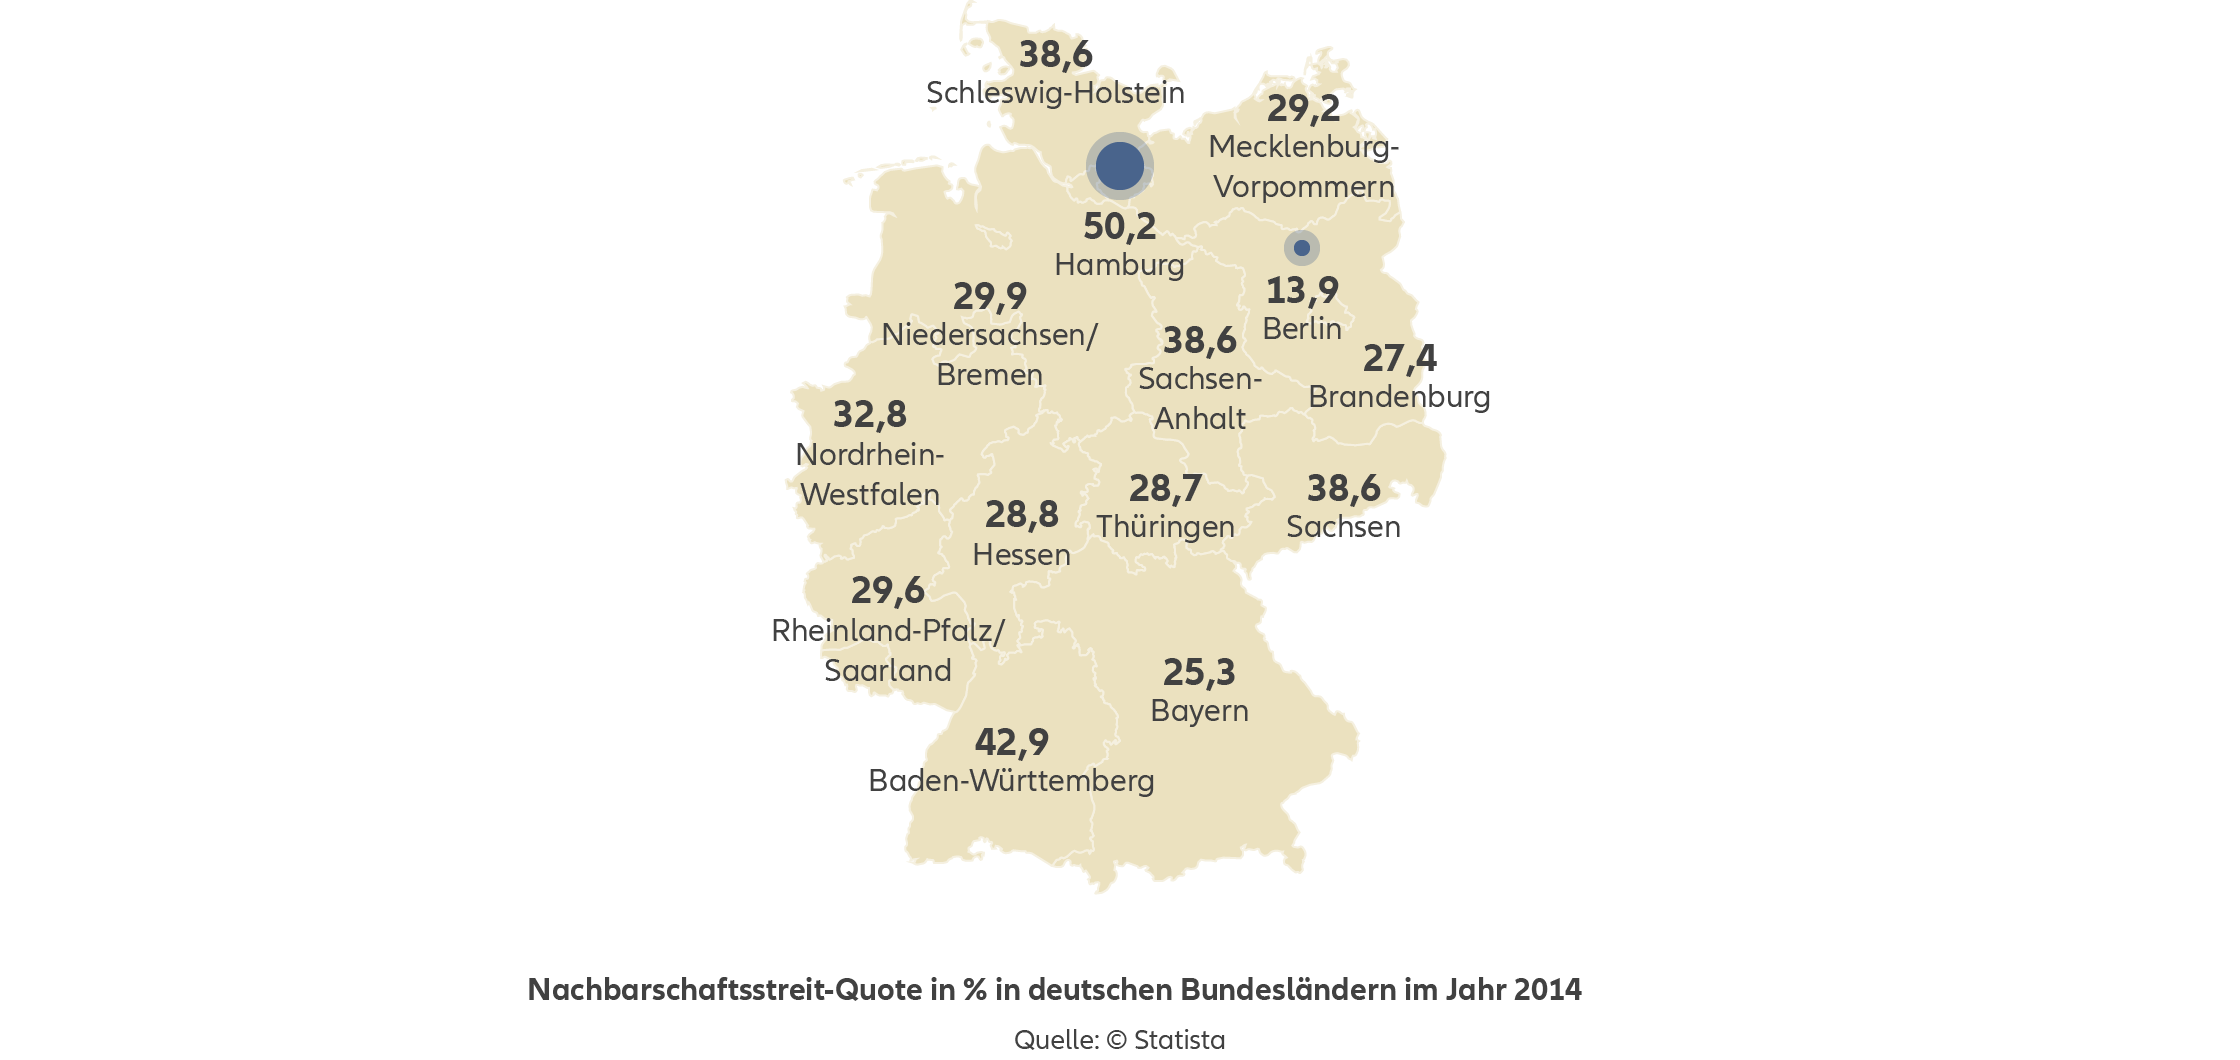 Allianz - Agentursuche Rechtsschutzversicherung Hamburg - Infografik: Nachbarschaftsstreitquote in Prozent in Deutschland